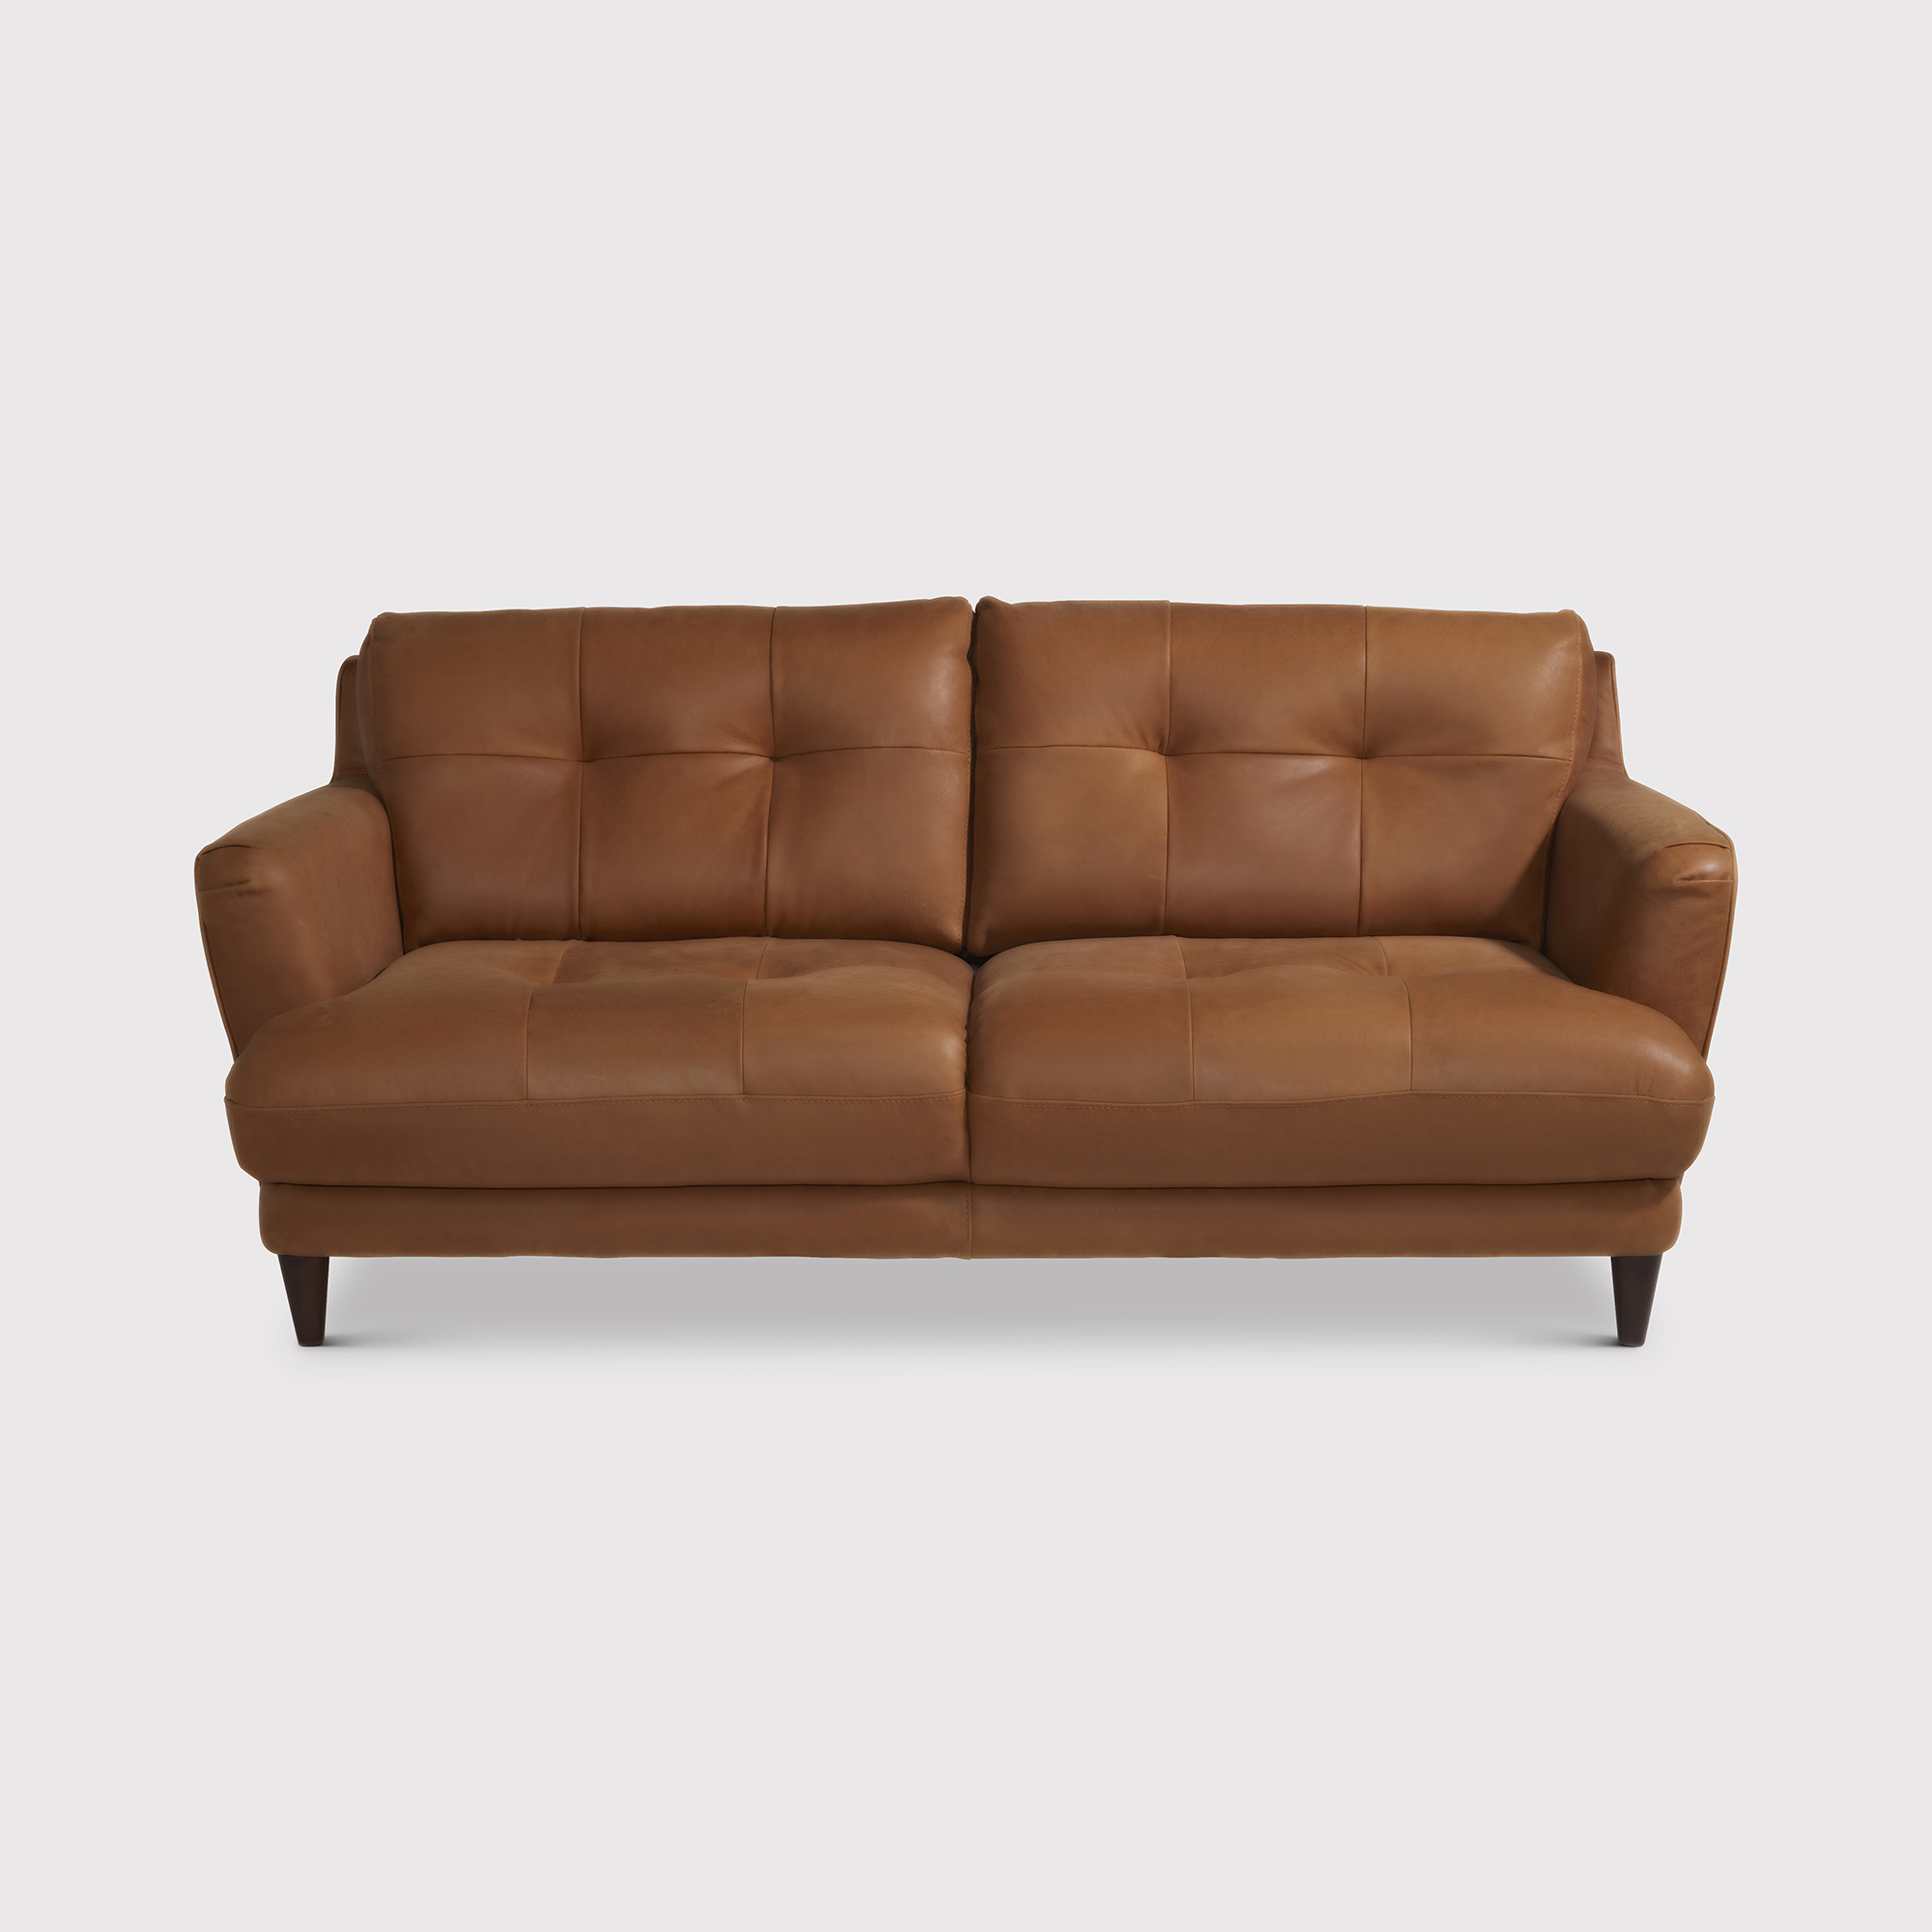 Photo of Aldo loveseat sofa in brown